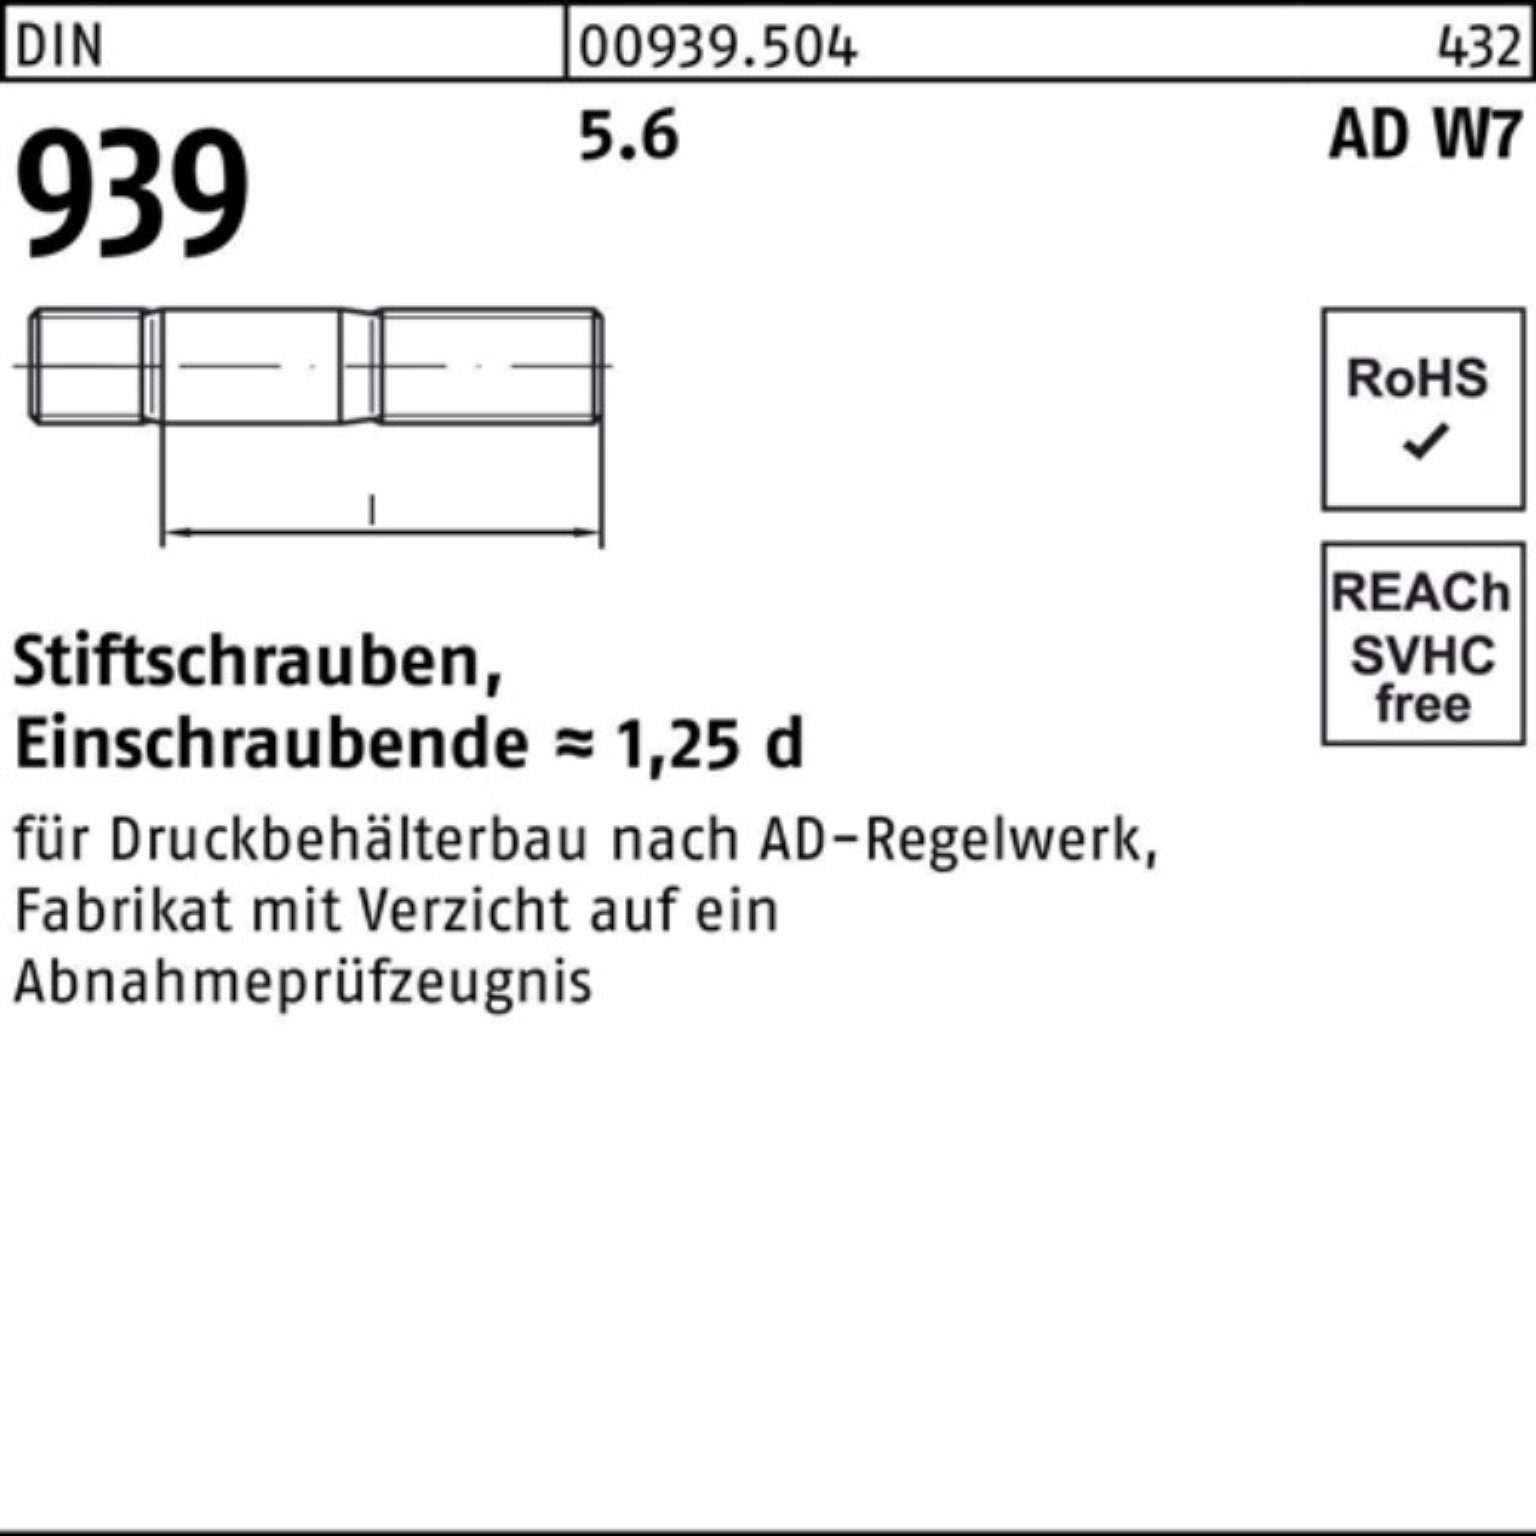 Stiftschraube Reyher 939 Stiftschraube DIN Pack AD 100er Einschraubende=1,25 M16x 5.6 60 W7